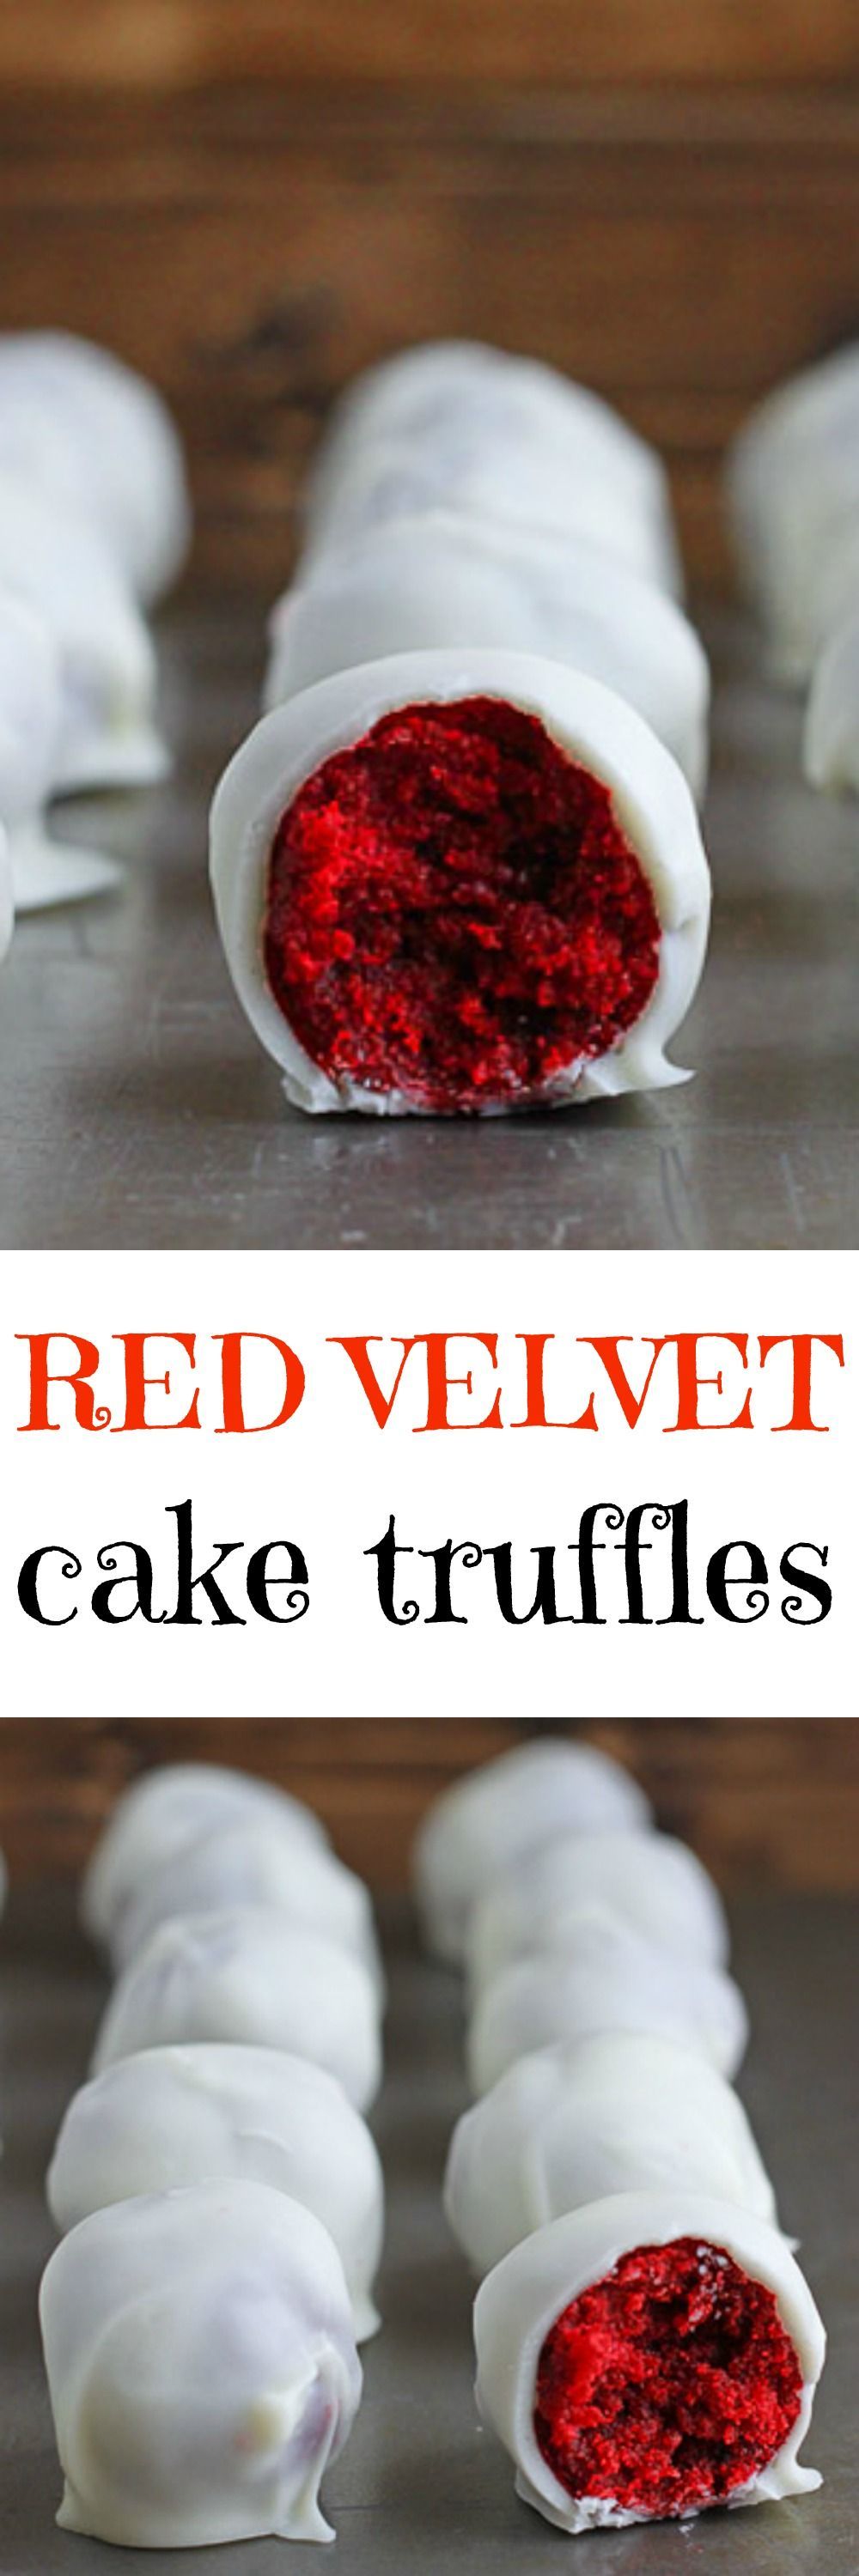 DIY cake truffles! With red velvet for Christmas dessert buffet tables!